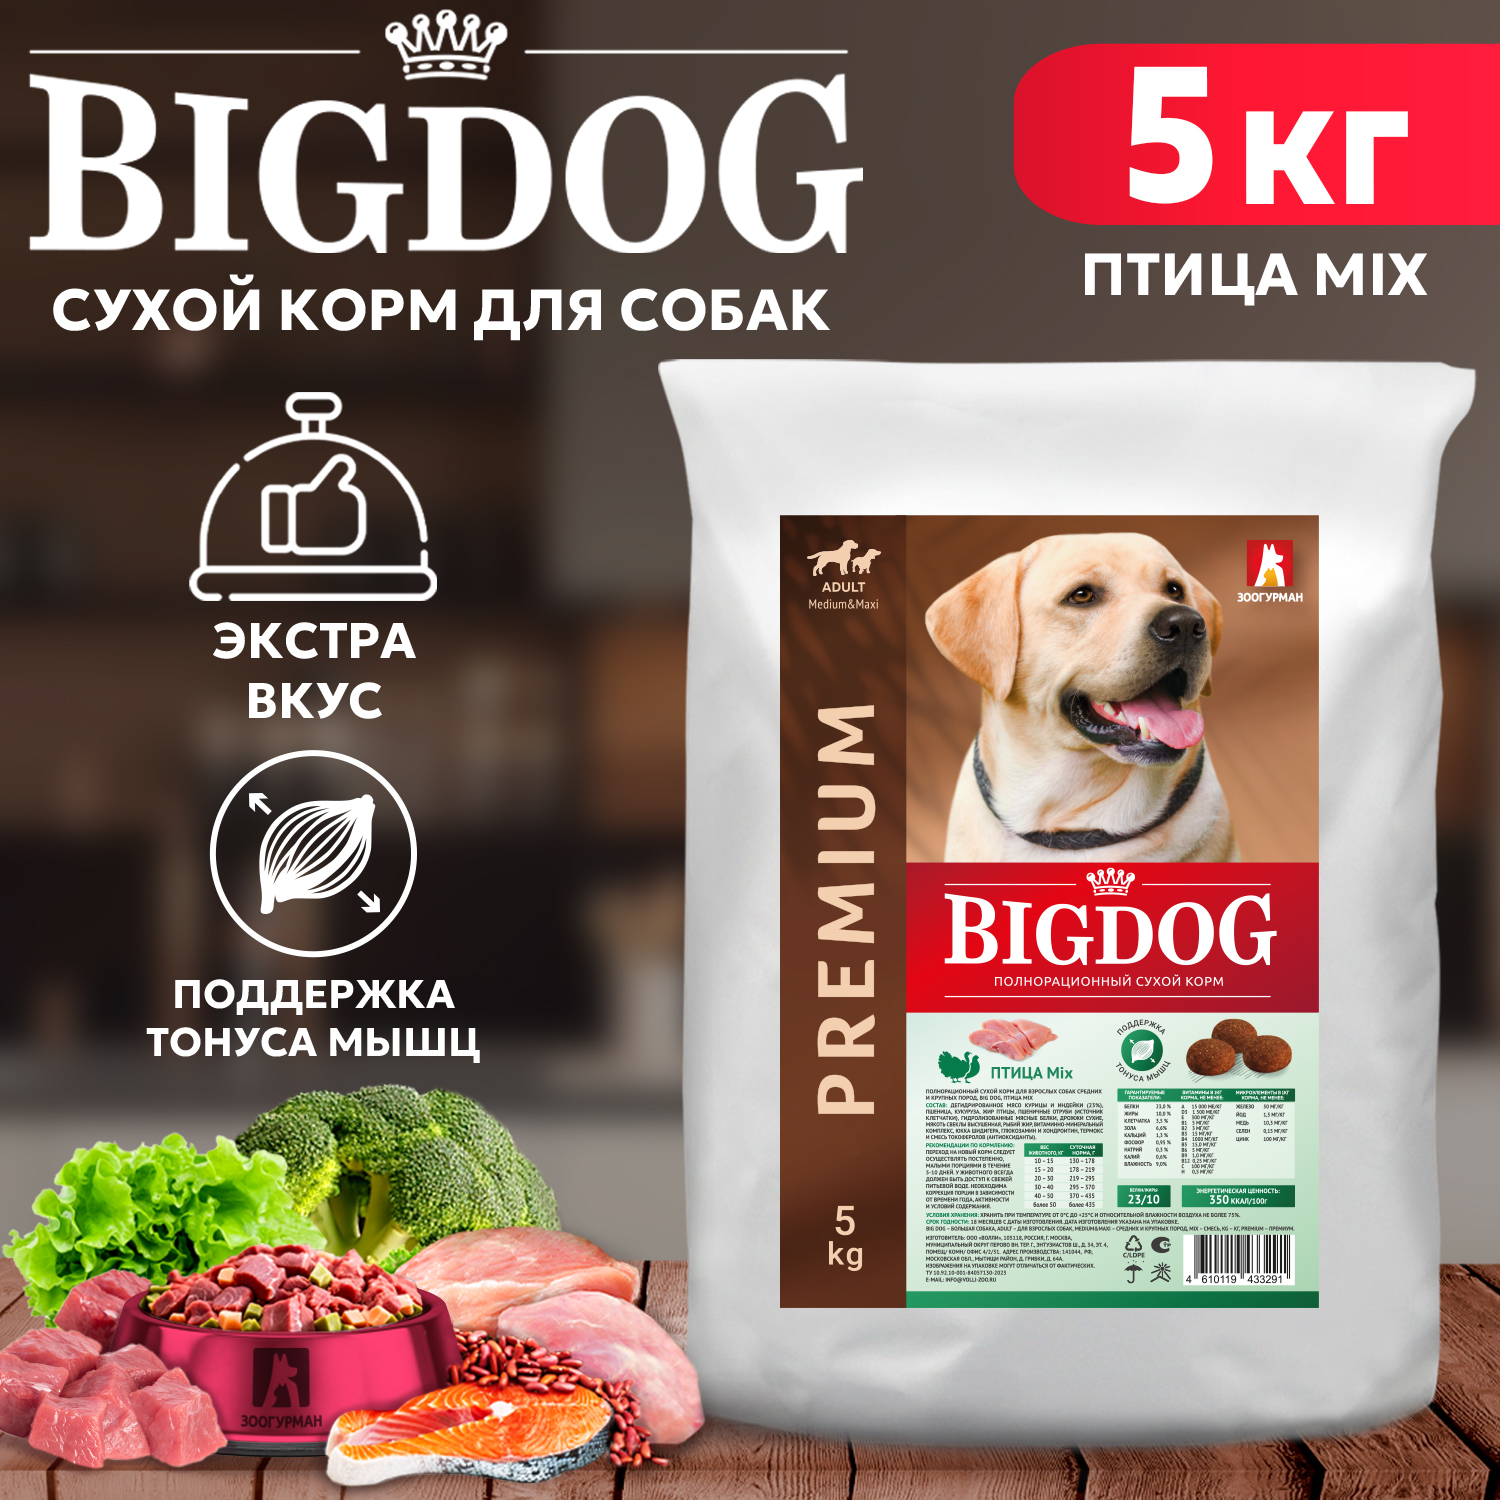 Сухой корм для собак BIG DOG, для взрослых, средних и крупных пород, птица MIX, 5 кг